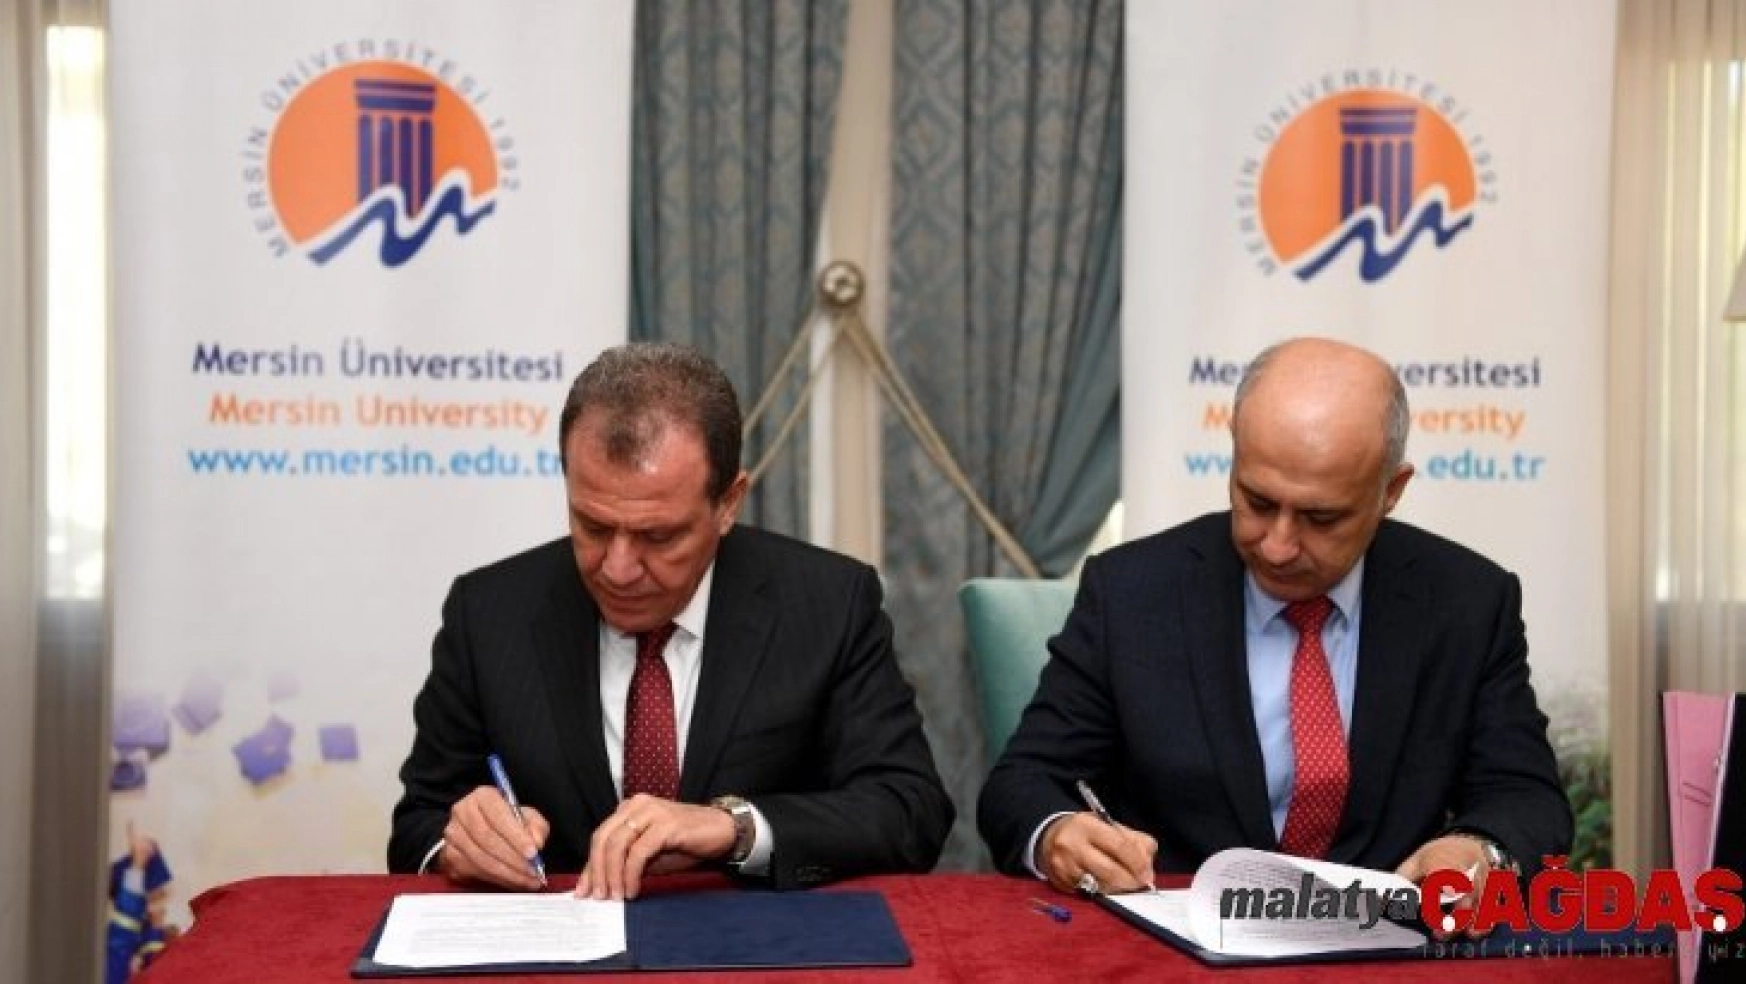 Mersin Büyükşehir Belediyesi ile Mersin Üniversitesi arasında imzalar atıldı